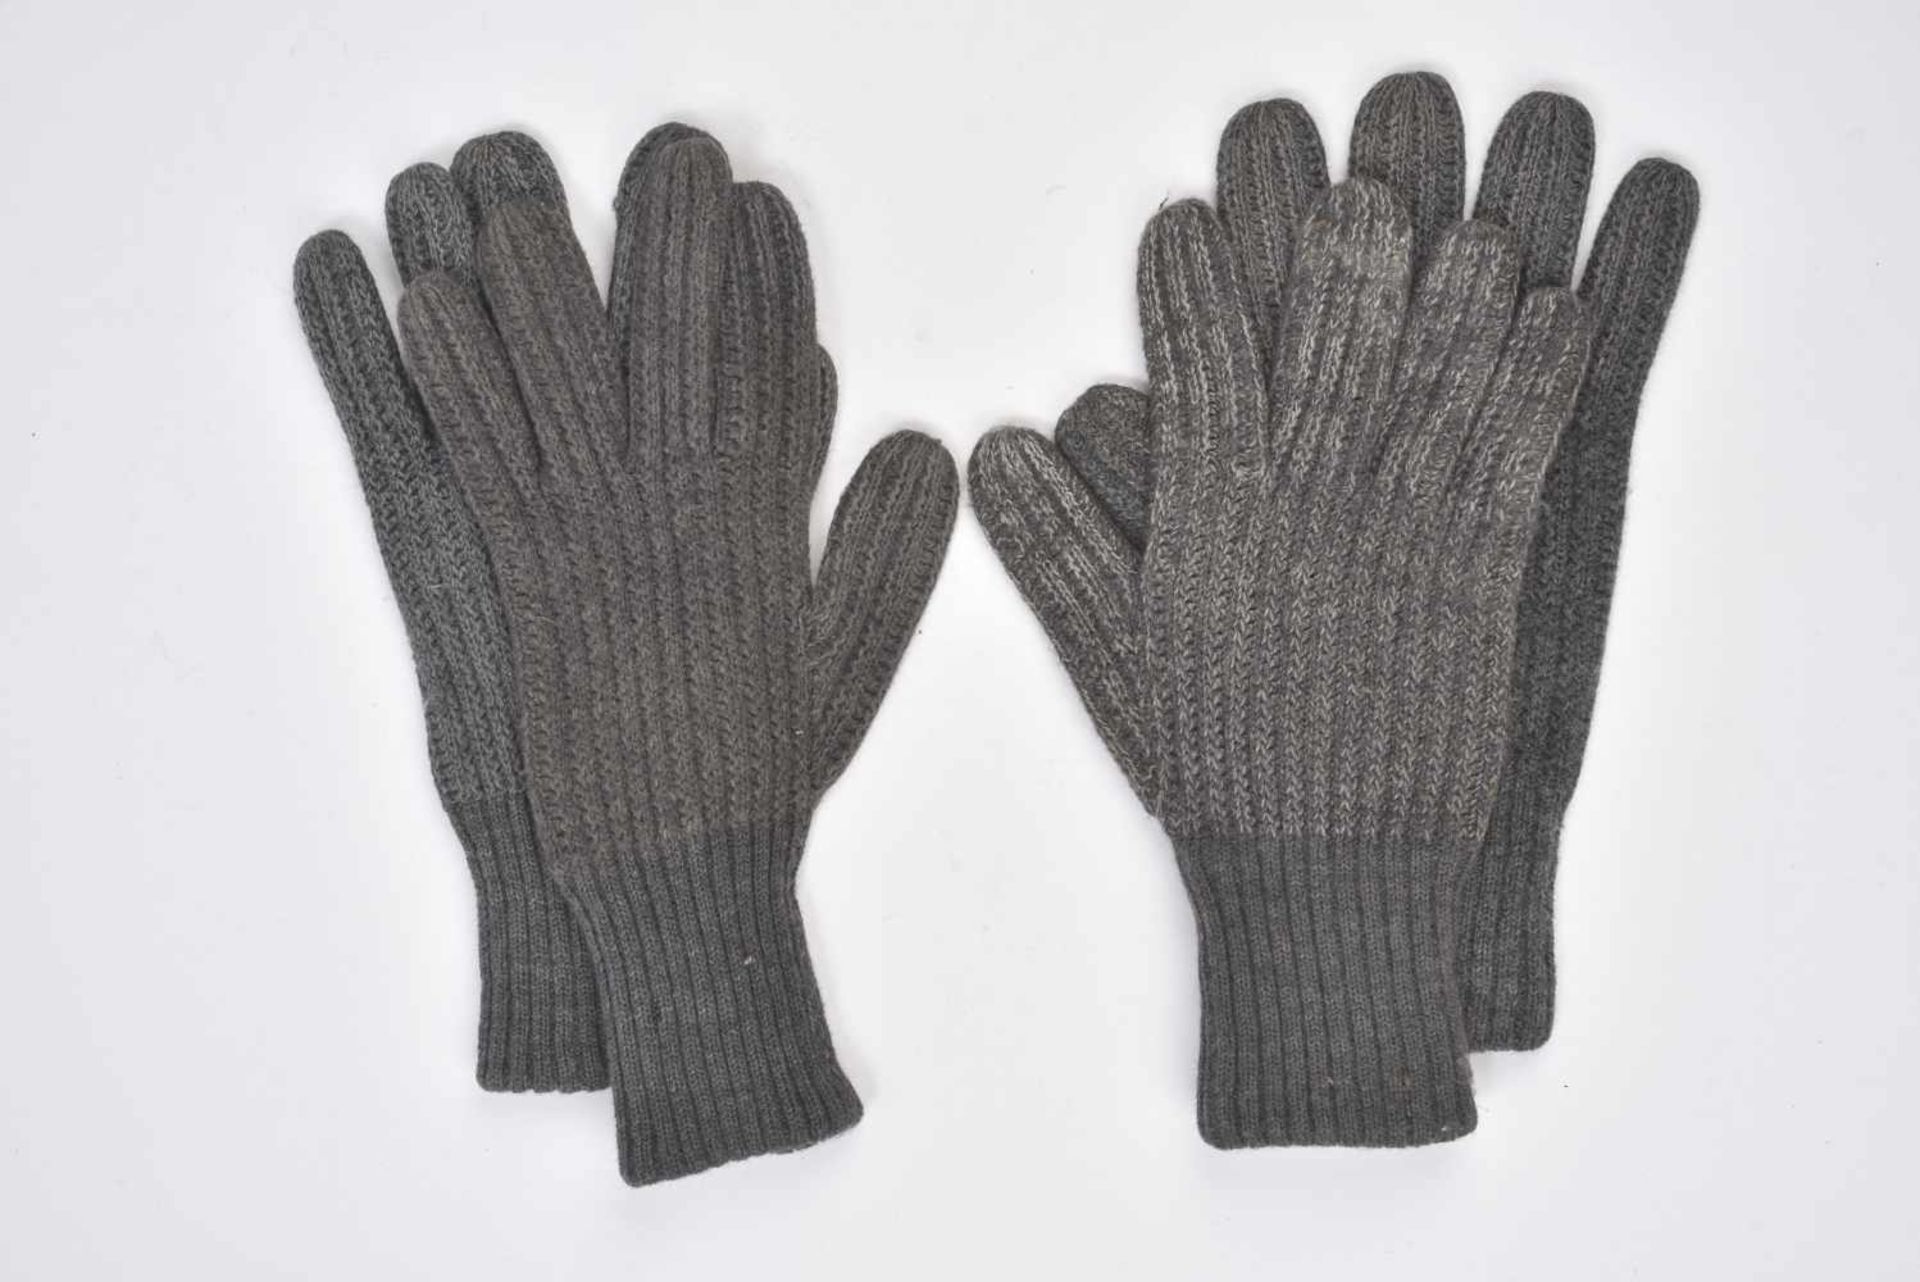 Gants de la HeerDeux paires de gants en laine grise. Une paire dispose de deux bandes blanches et